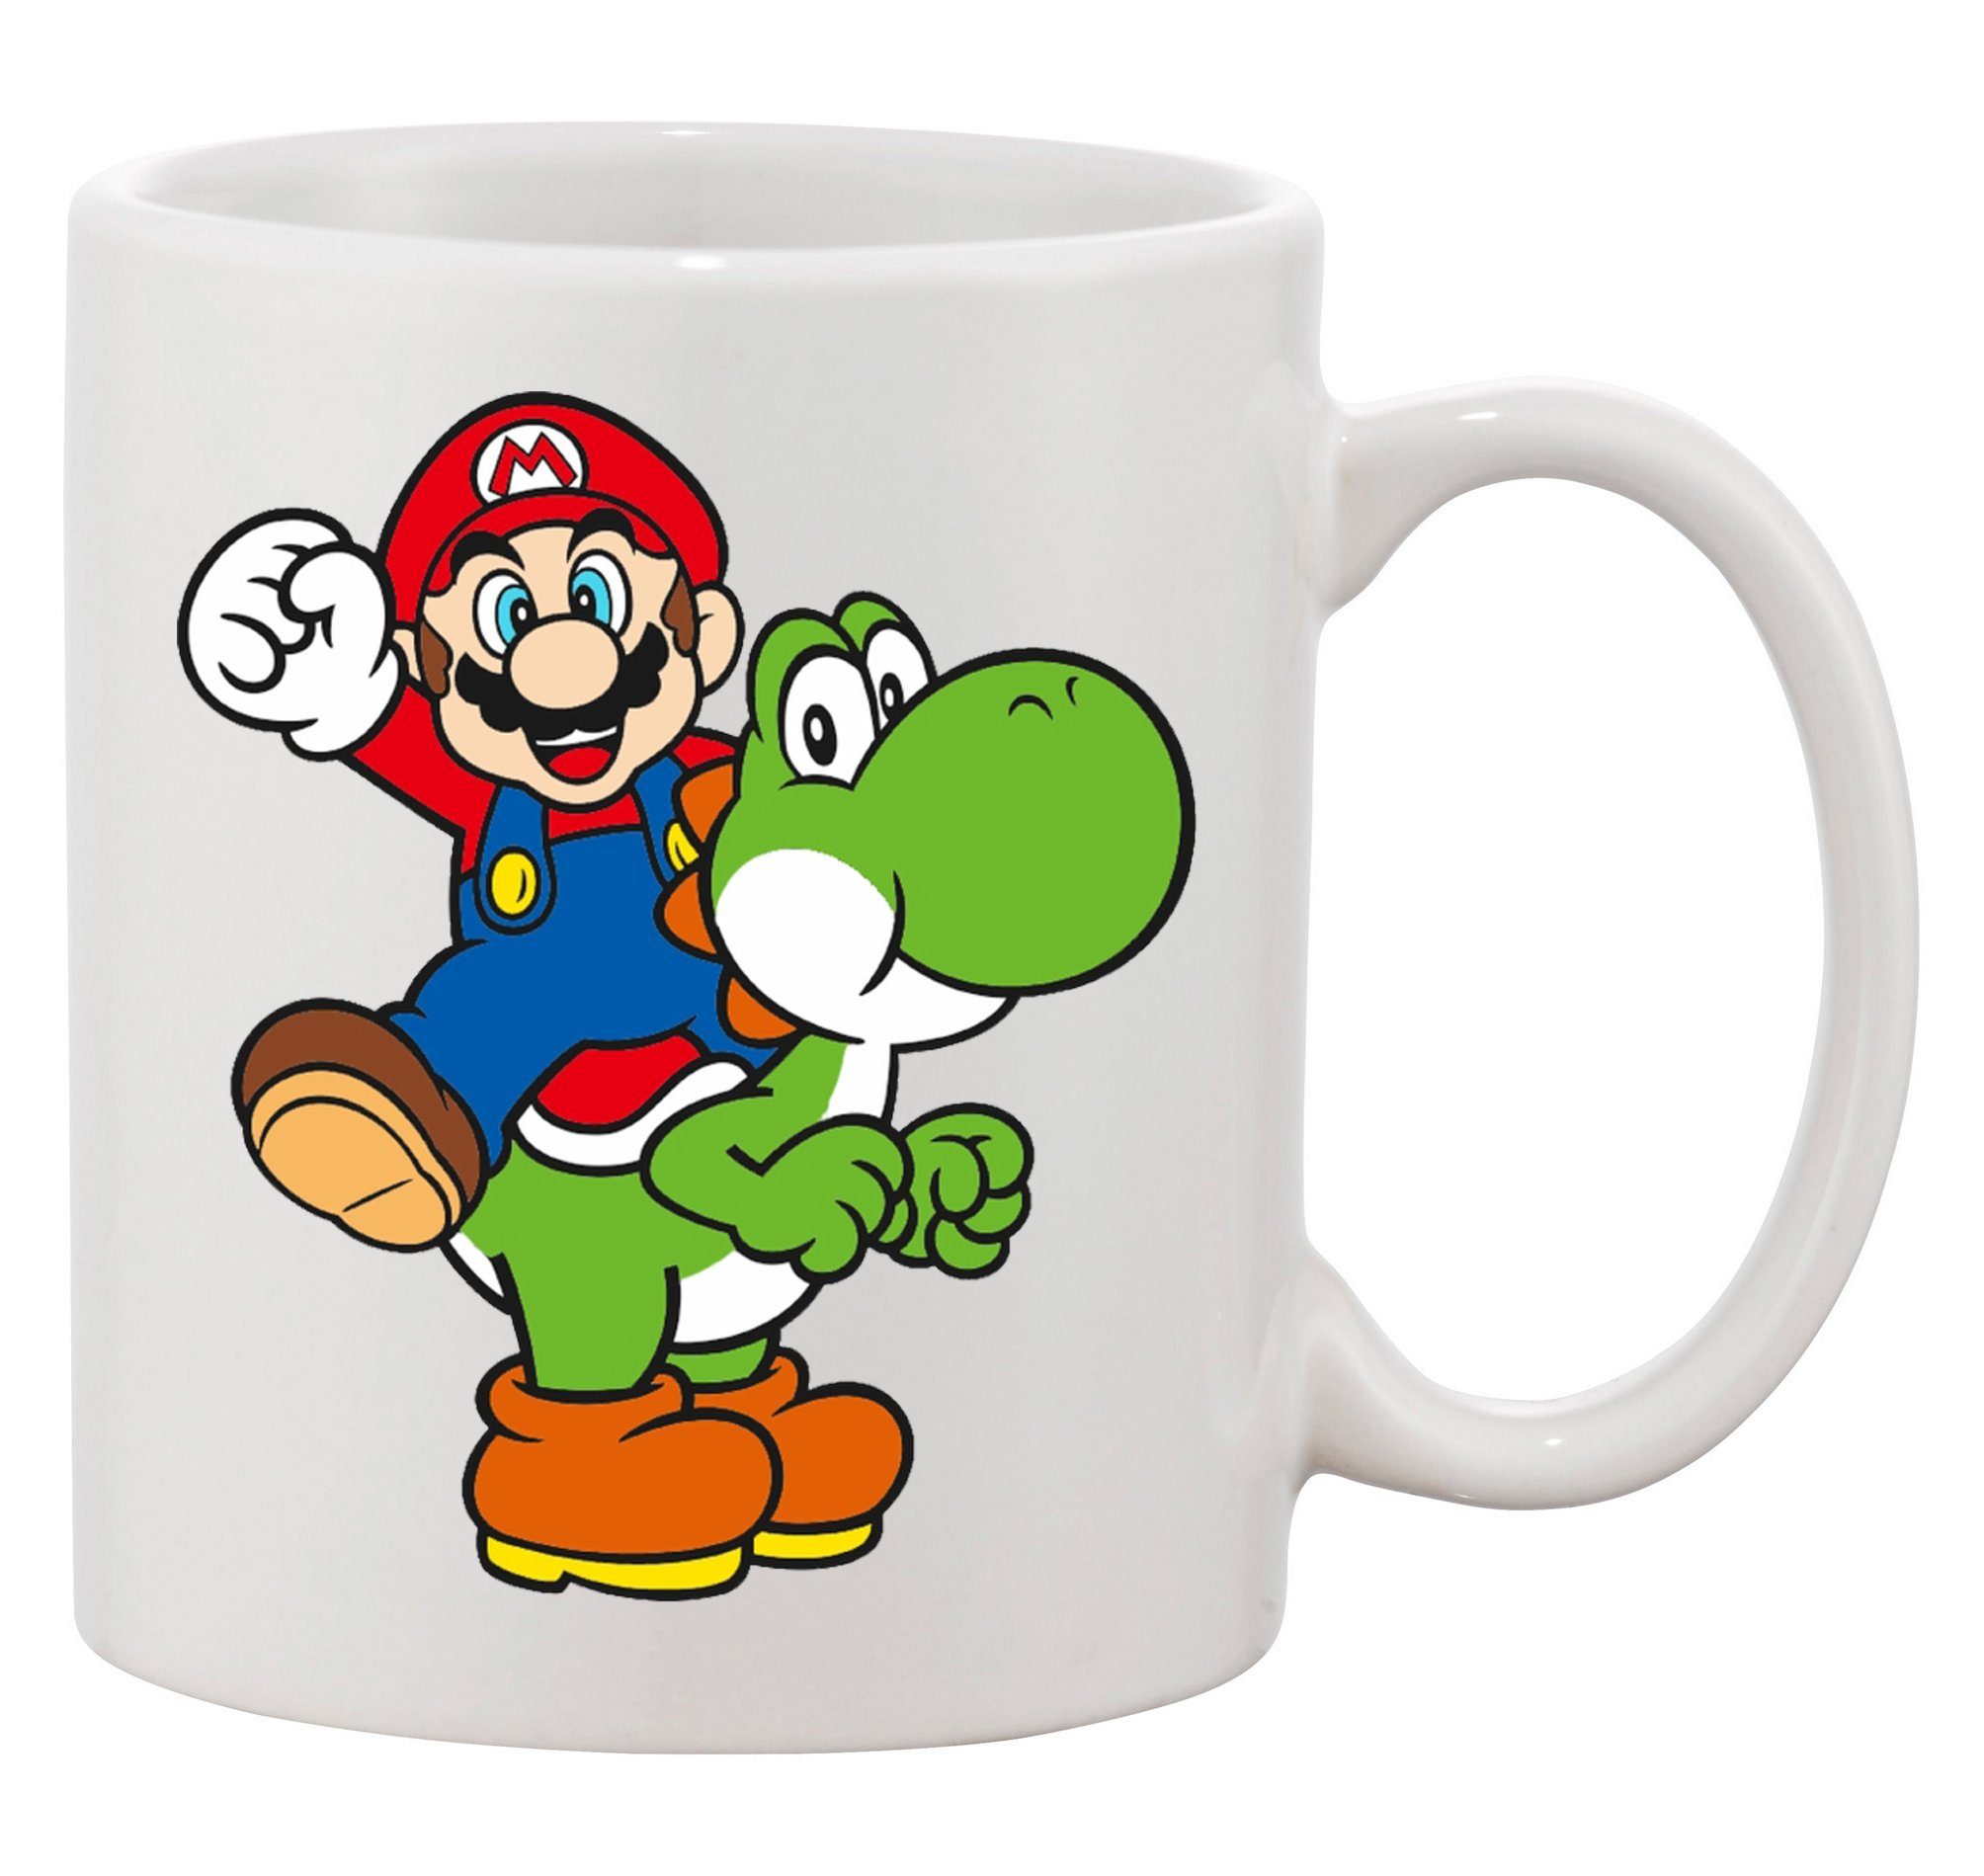 Spiele Weiss Nintendo Mario Brownie Luigi, Blondie Keramik Nerd & Konsole & Tasse Yoshi Super